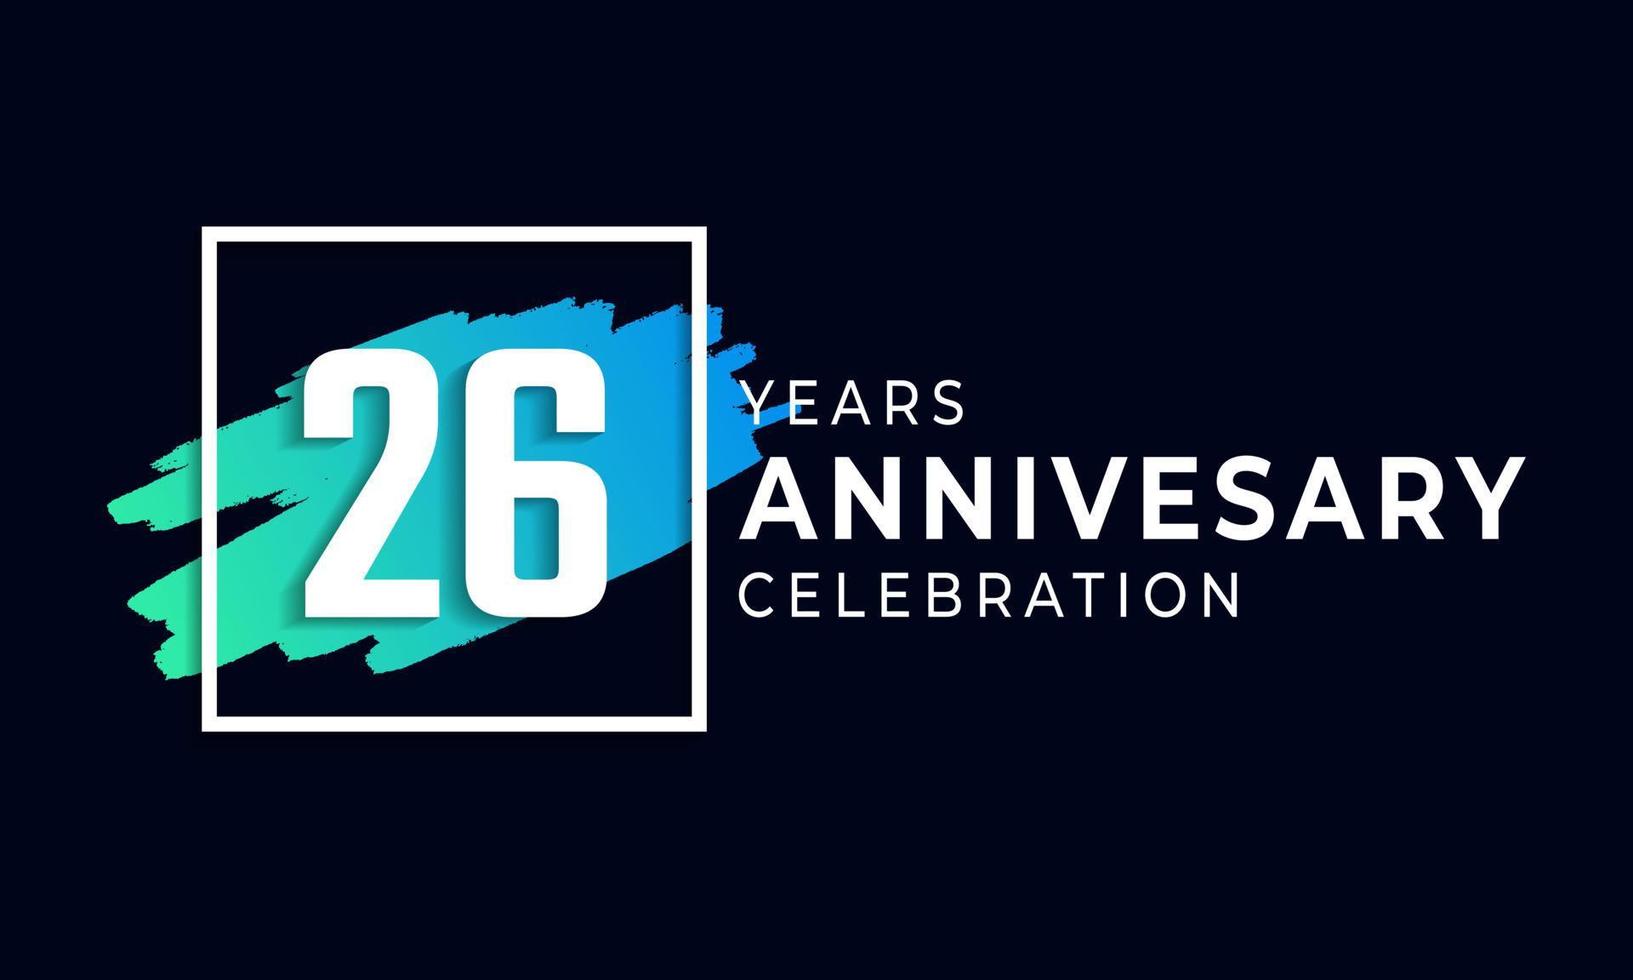 26-jarig jubileumfeest met blauwe borstel en vierkant symbool. gelukkige verjaardag groet viert gebeurtenis geïsoleerd op zwarte achtergrond vector